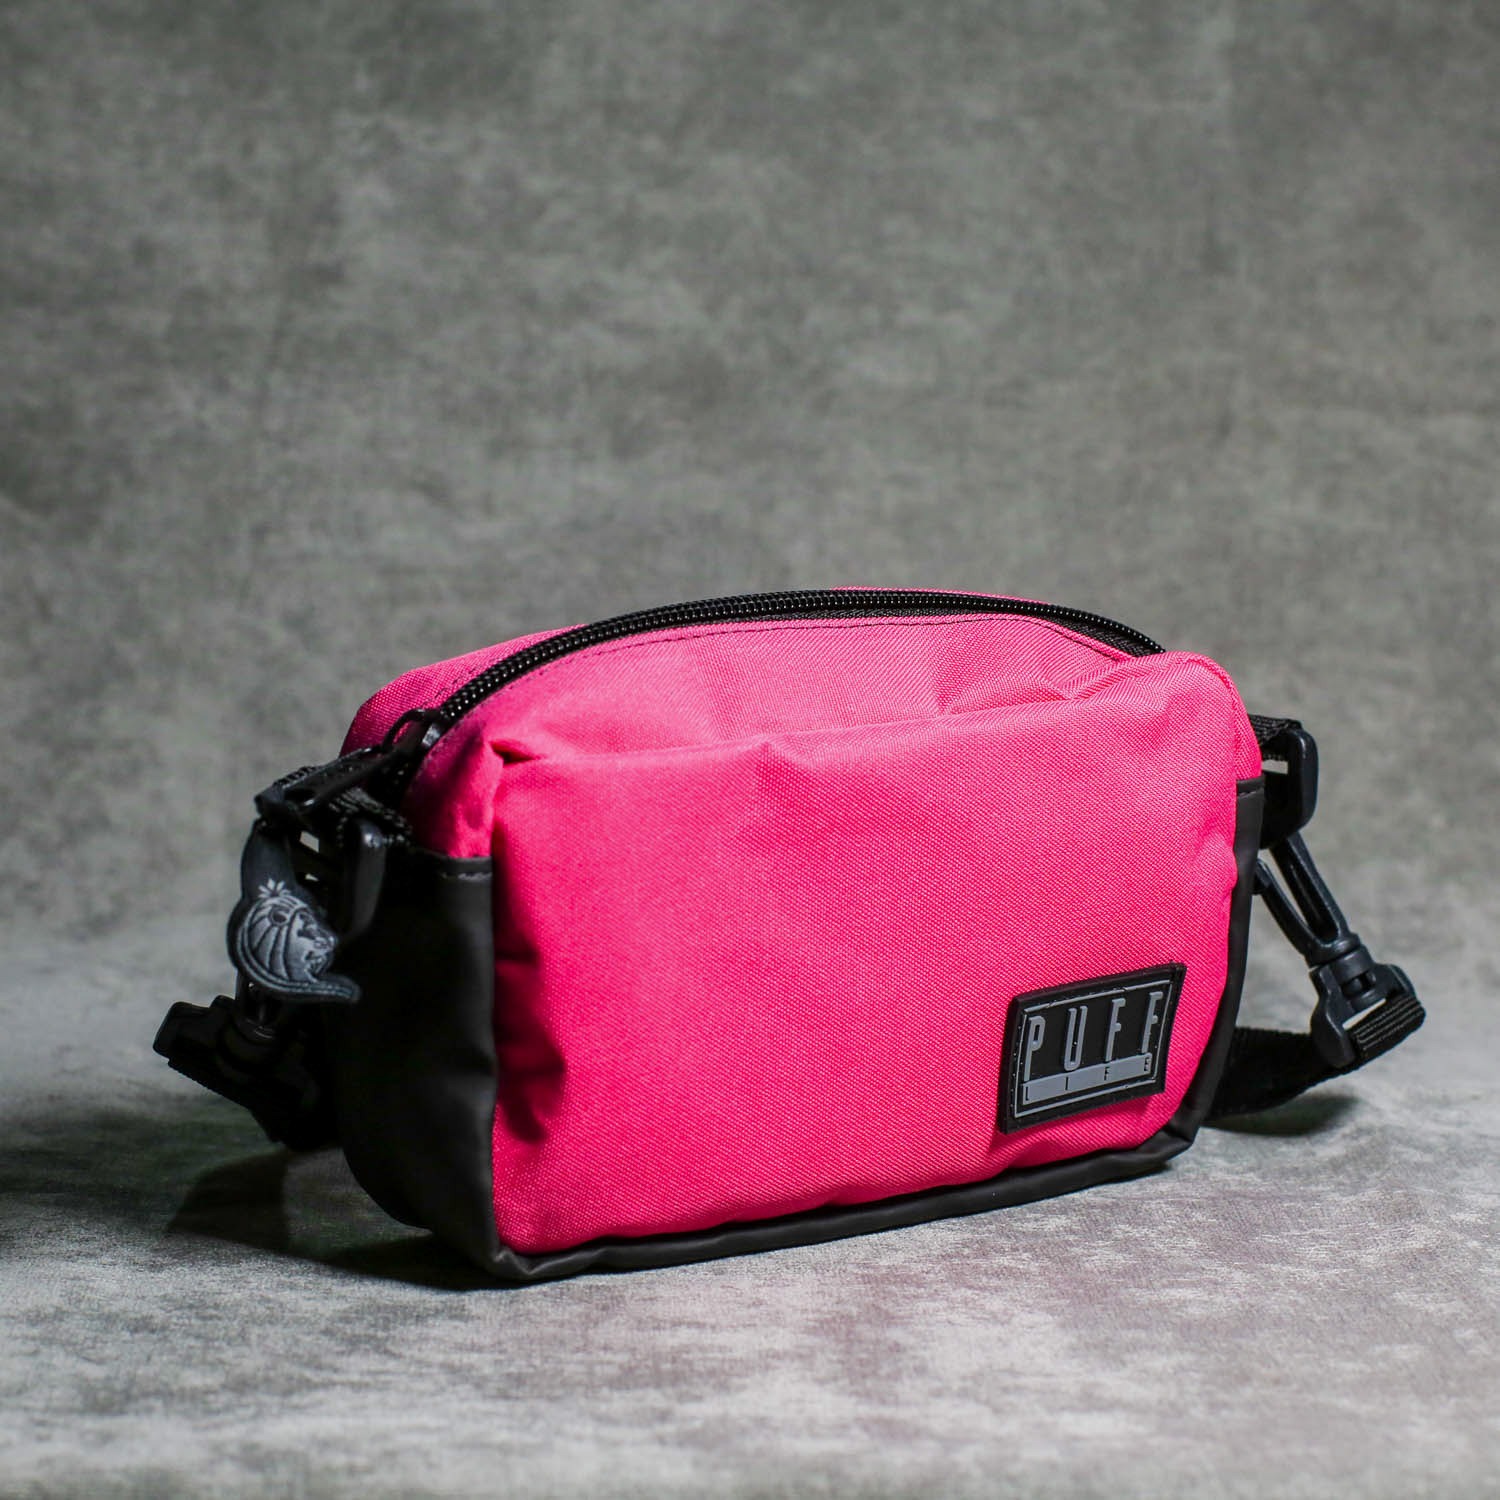 Mini Shoulder Bag Puff Life Pink